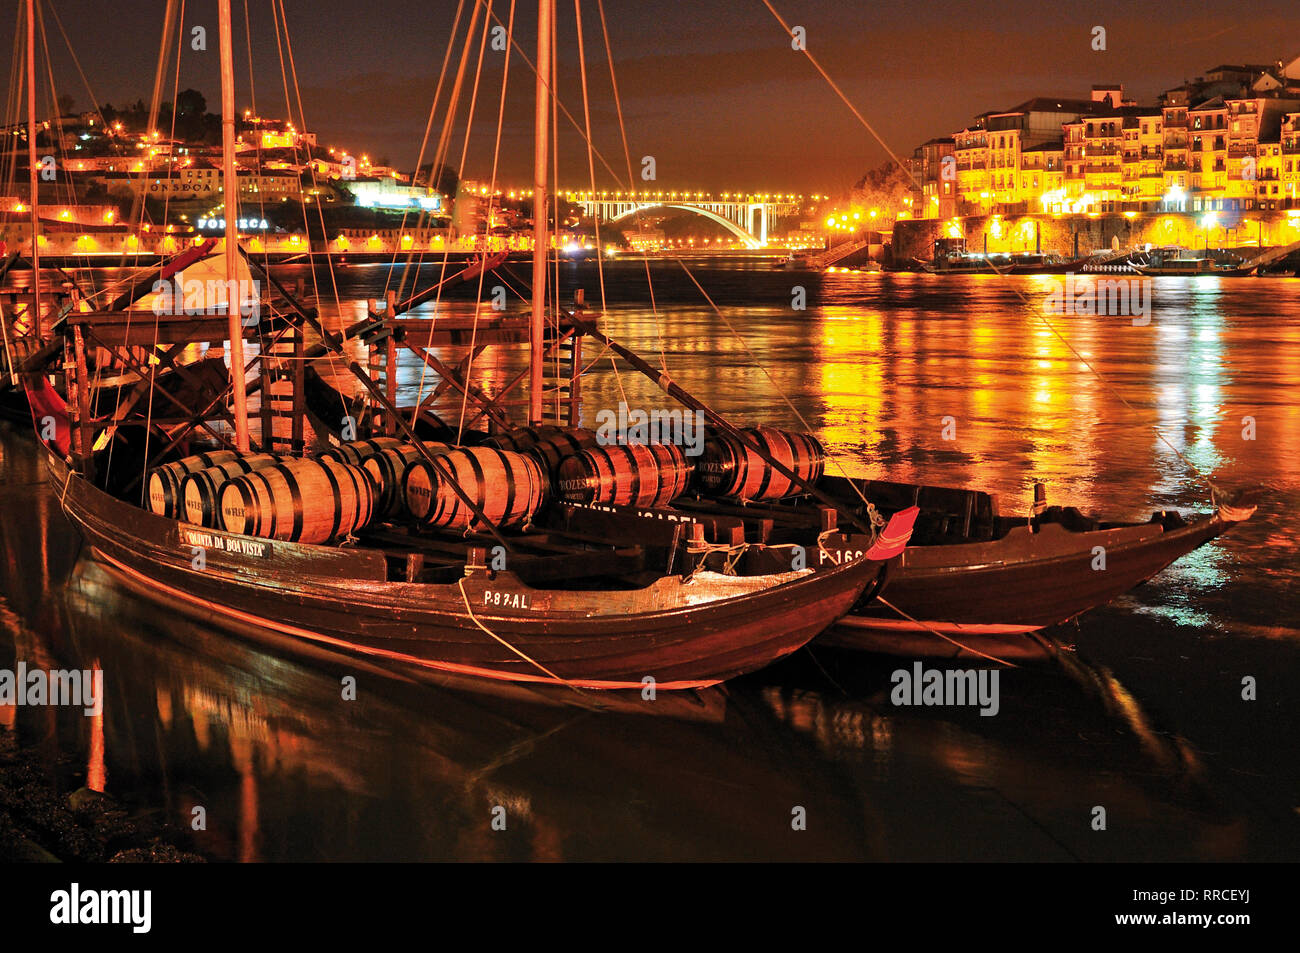 Puerto histórico con barriles de vino vino barcos anclados en el río Duero por la noche Foto de stock